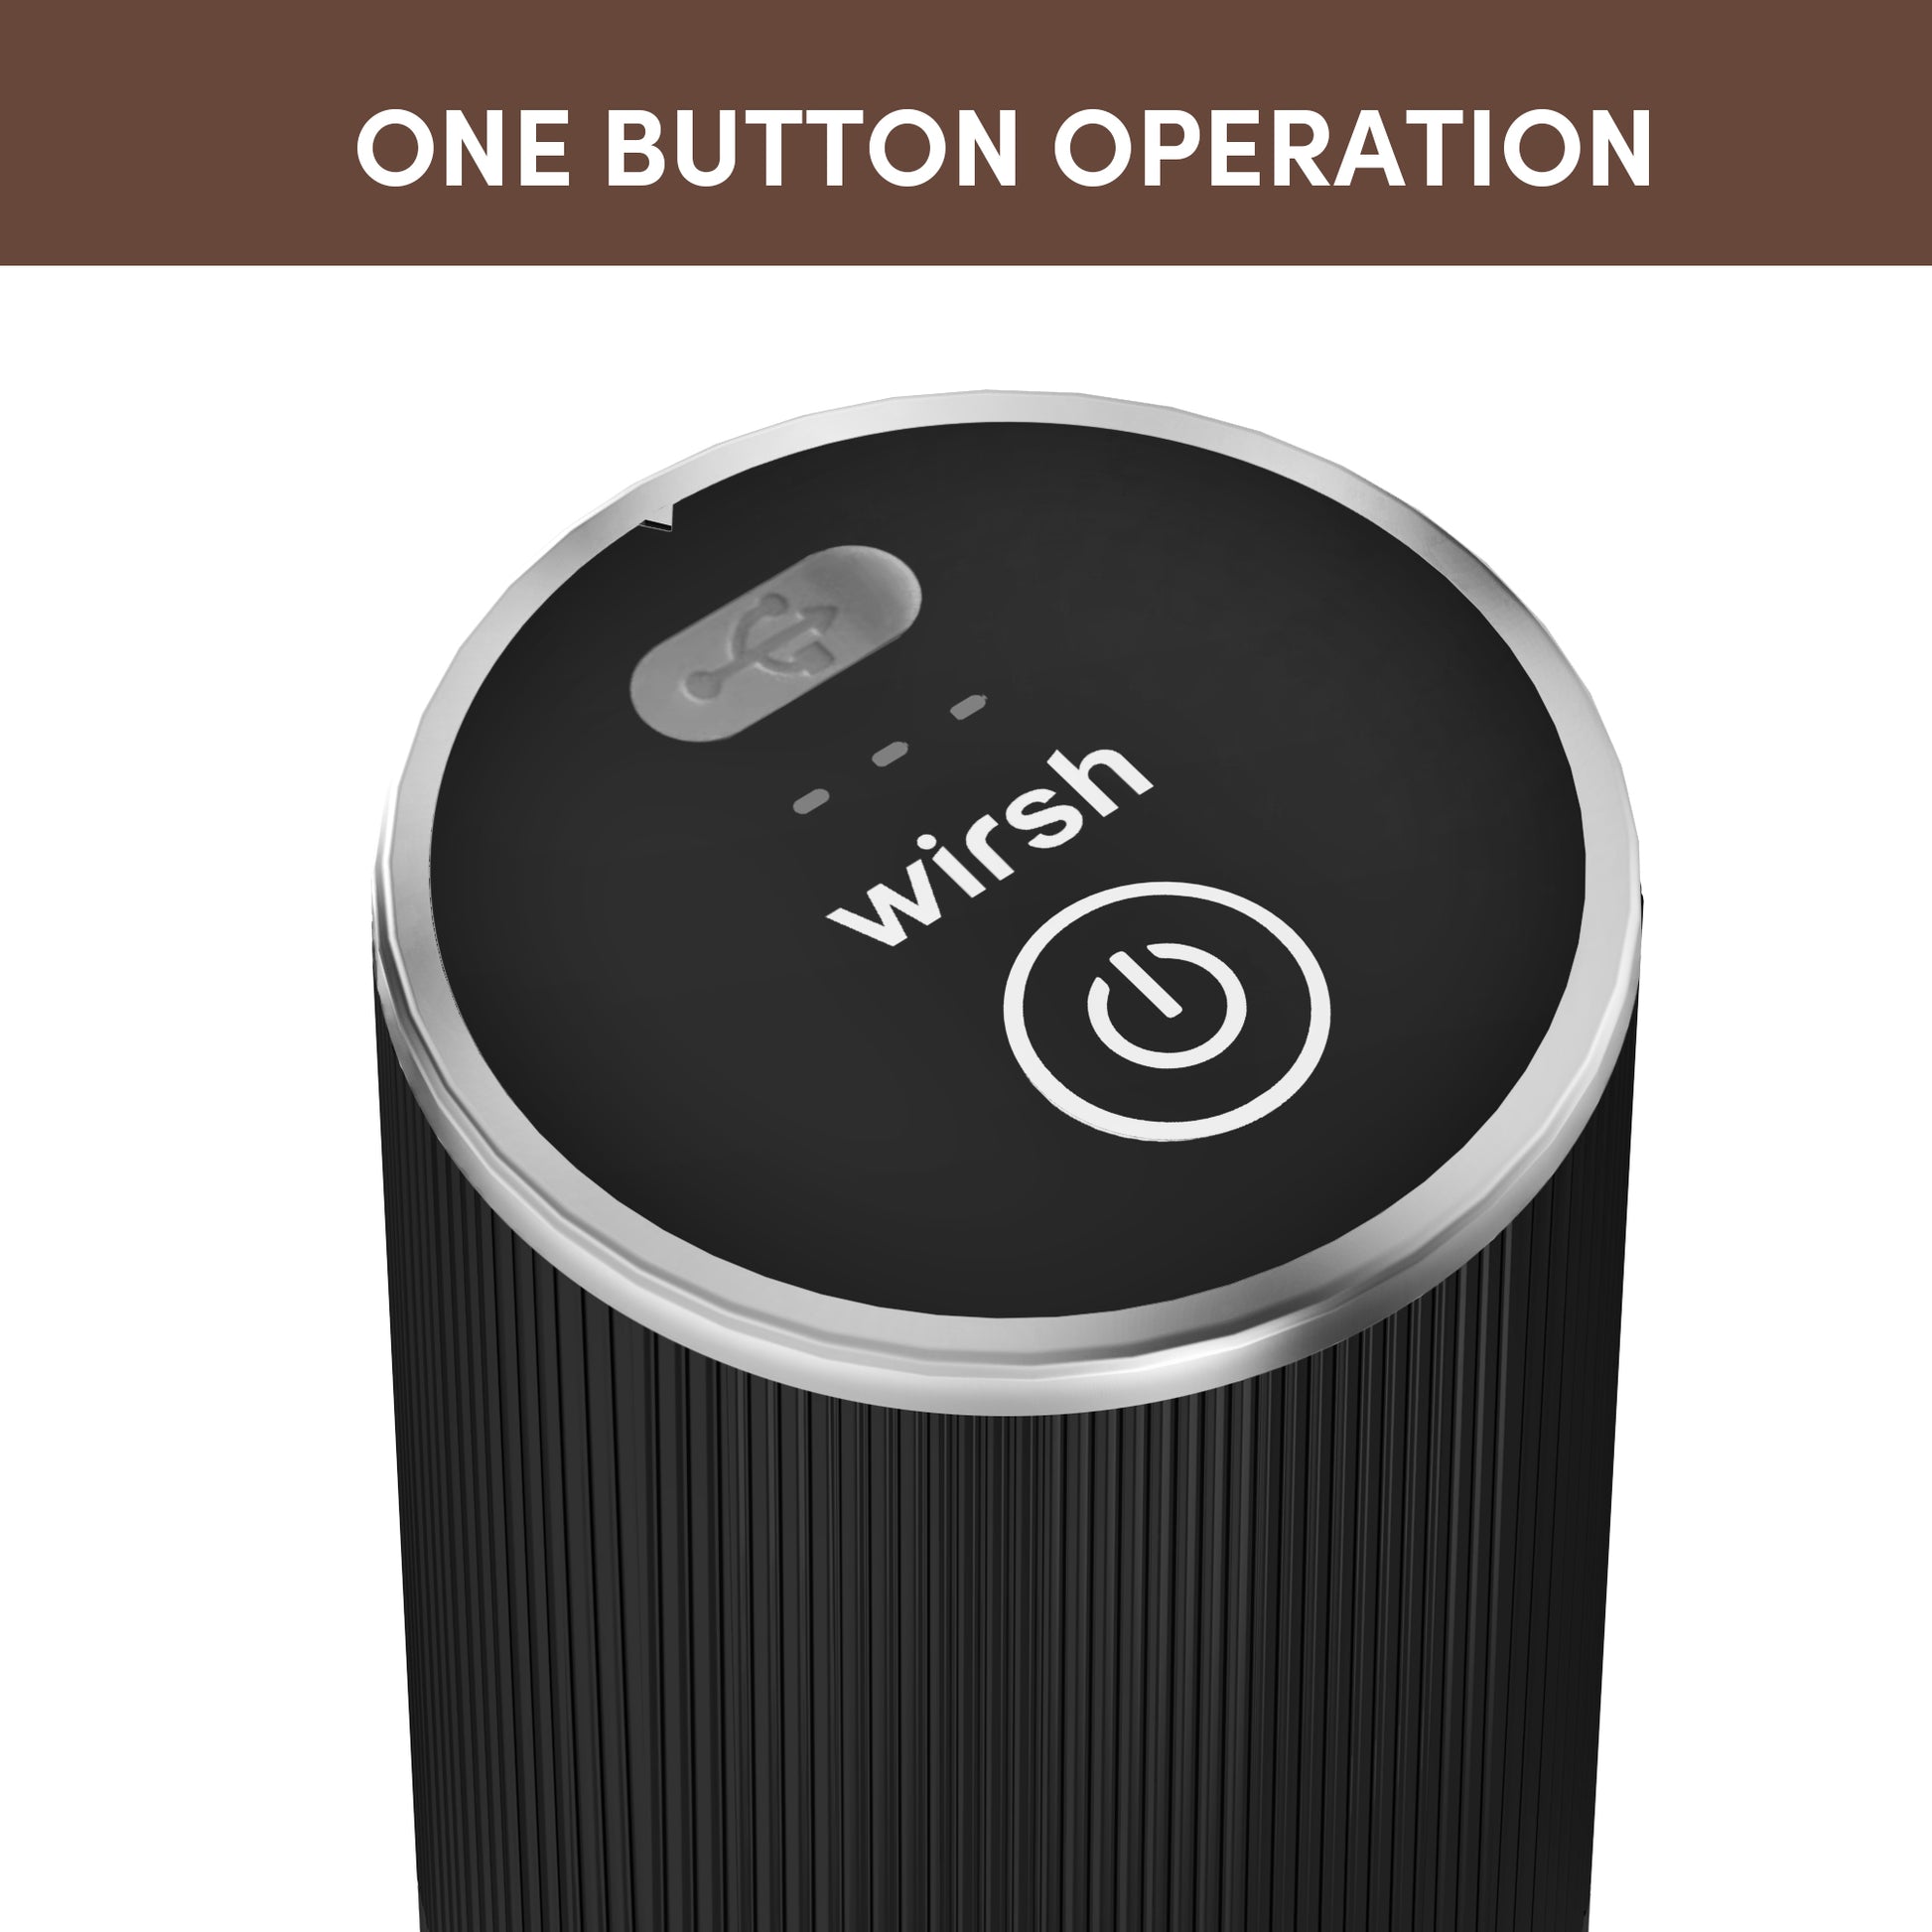 <img src="coffee grinder.jpg" alt="wirsh poratable coffee grinder one button operation"/>